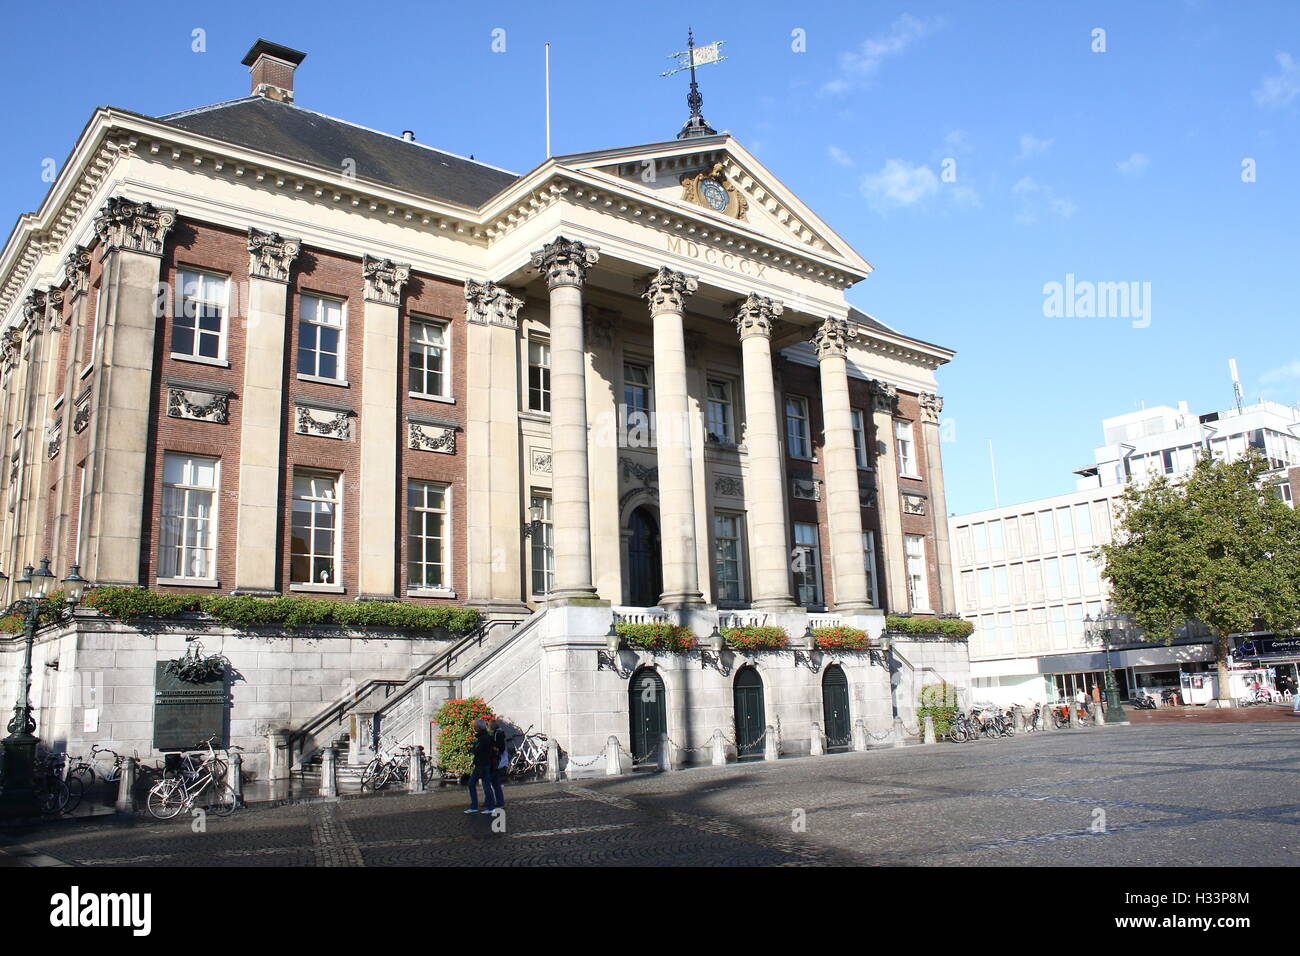 Au début du 18ème siècle l'hôtel de ville (Stadhuis) sur Grote Markt (Grand Place) dans le centre historique de Groningen, Pays-Bas Banque D'Images